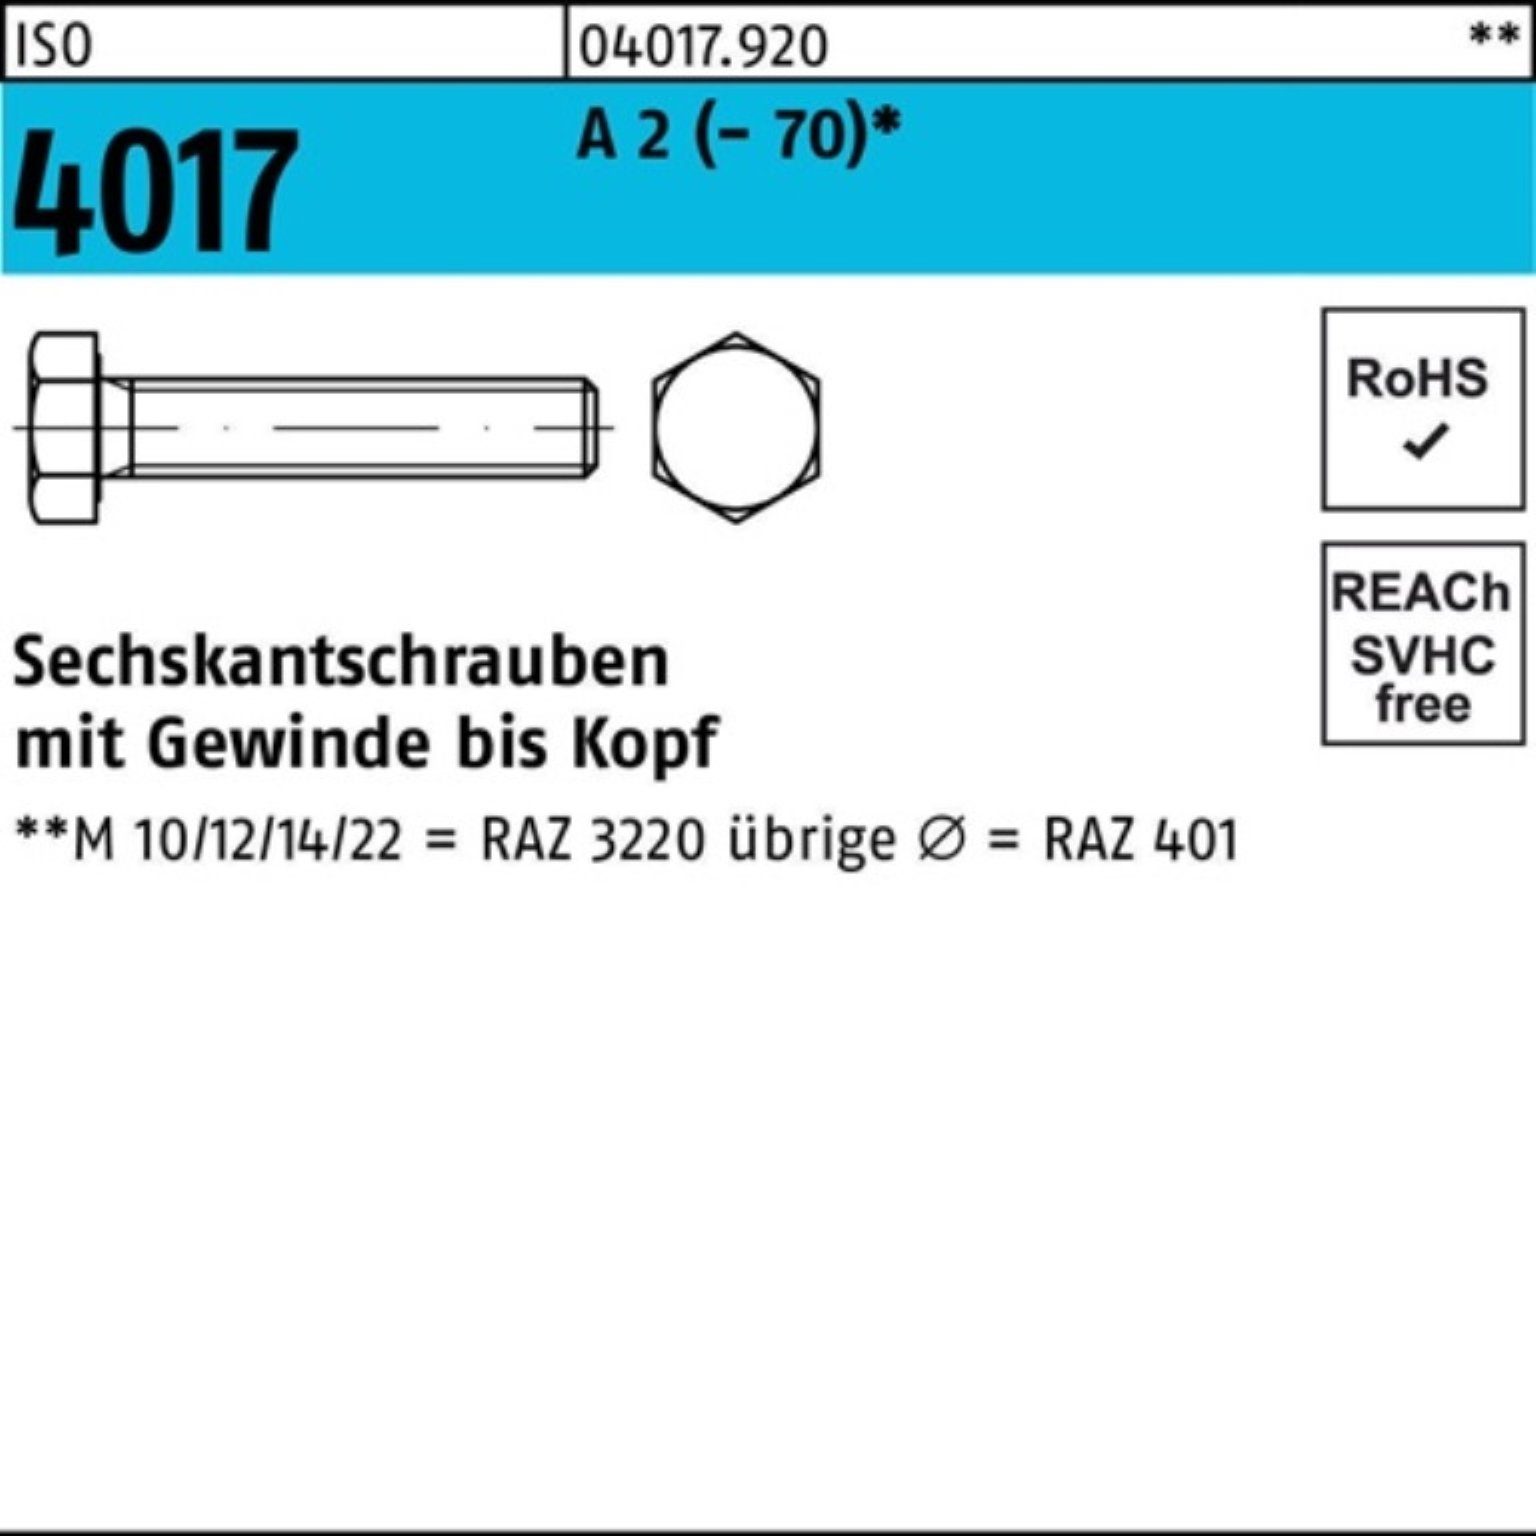 ISO VG Sechskantschraube M14x Bufab Sechskantschraube A 2 100er 20 Stück 4017 50 Pack (70)